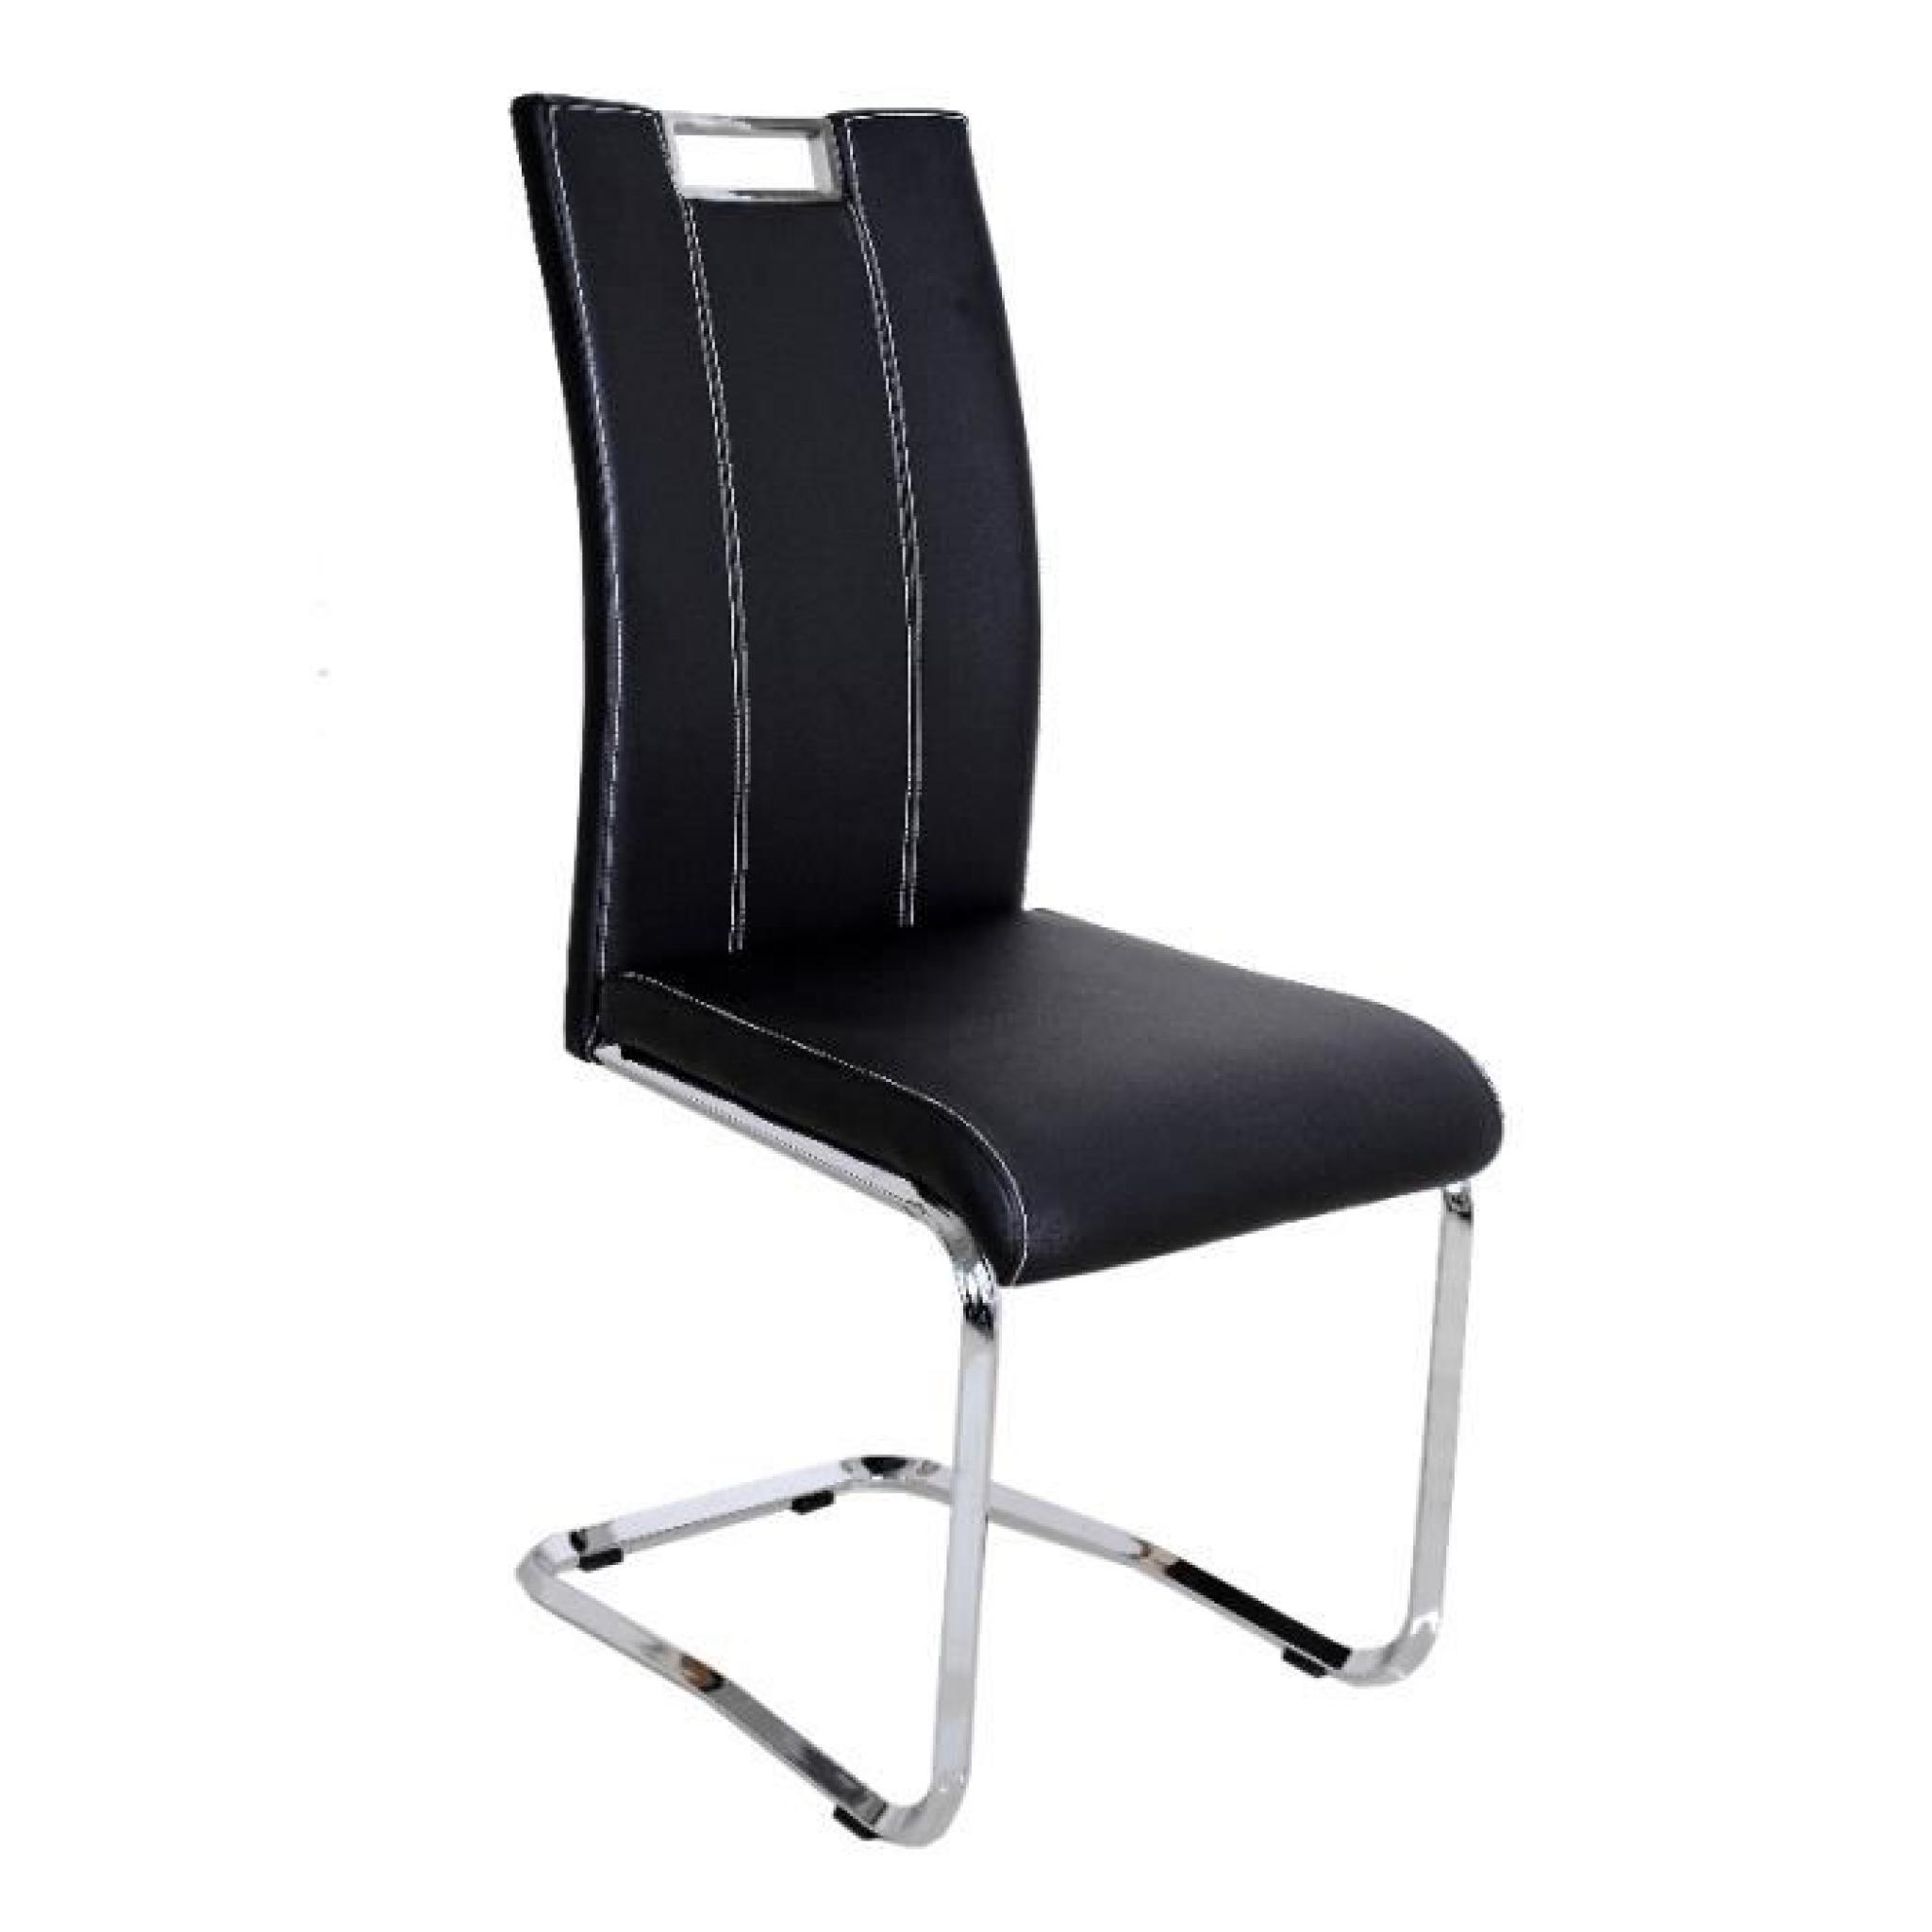 Chaise en PU moderne coloris noir